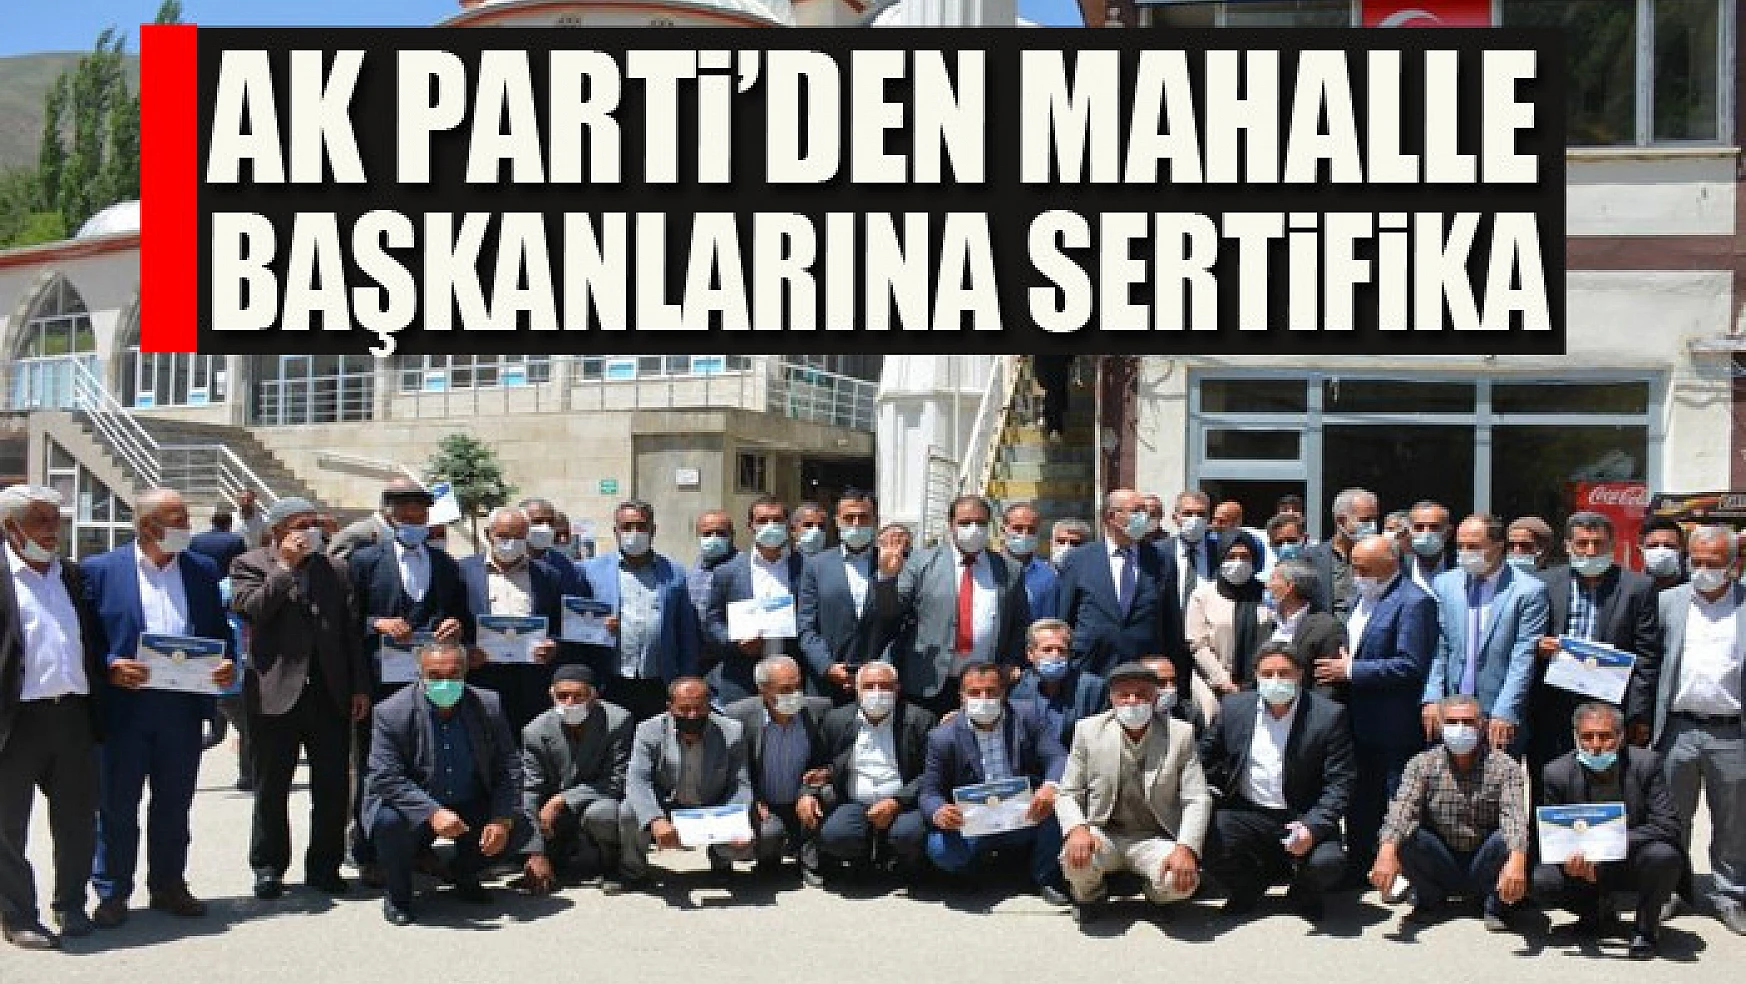 AK Parti'den mahalle başkanlarına sertifika